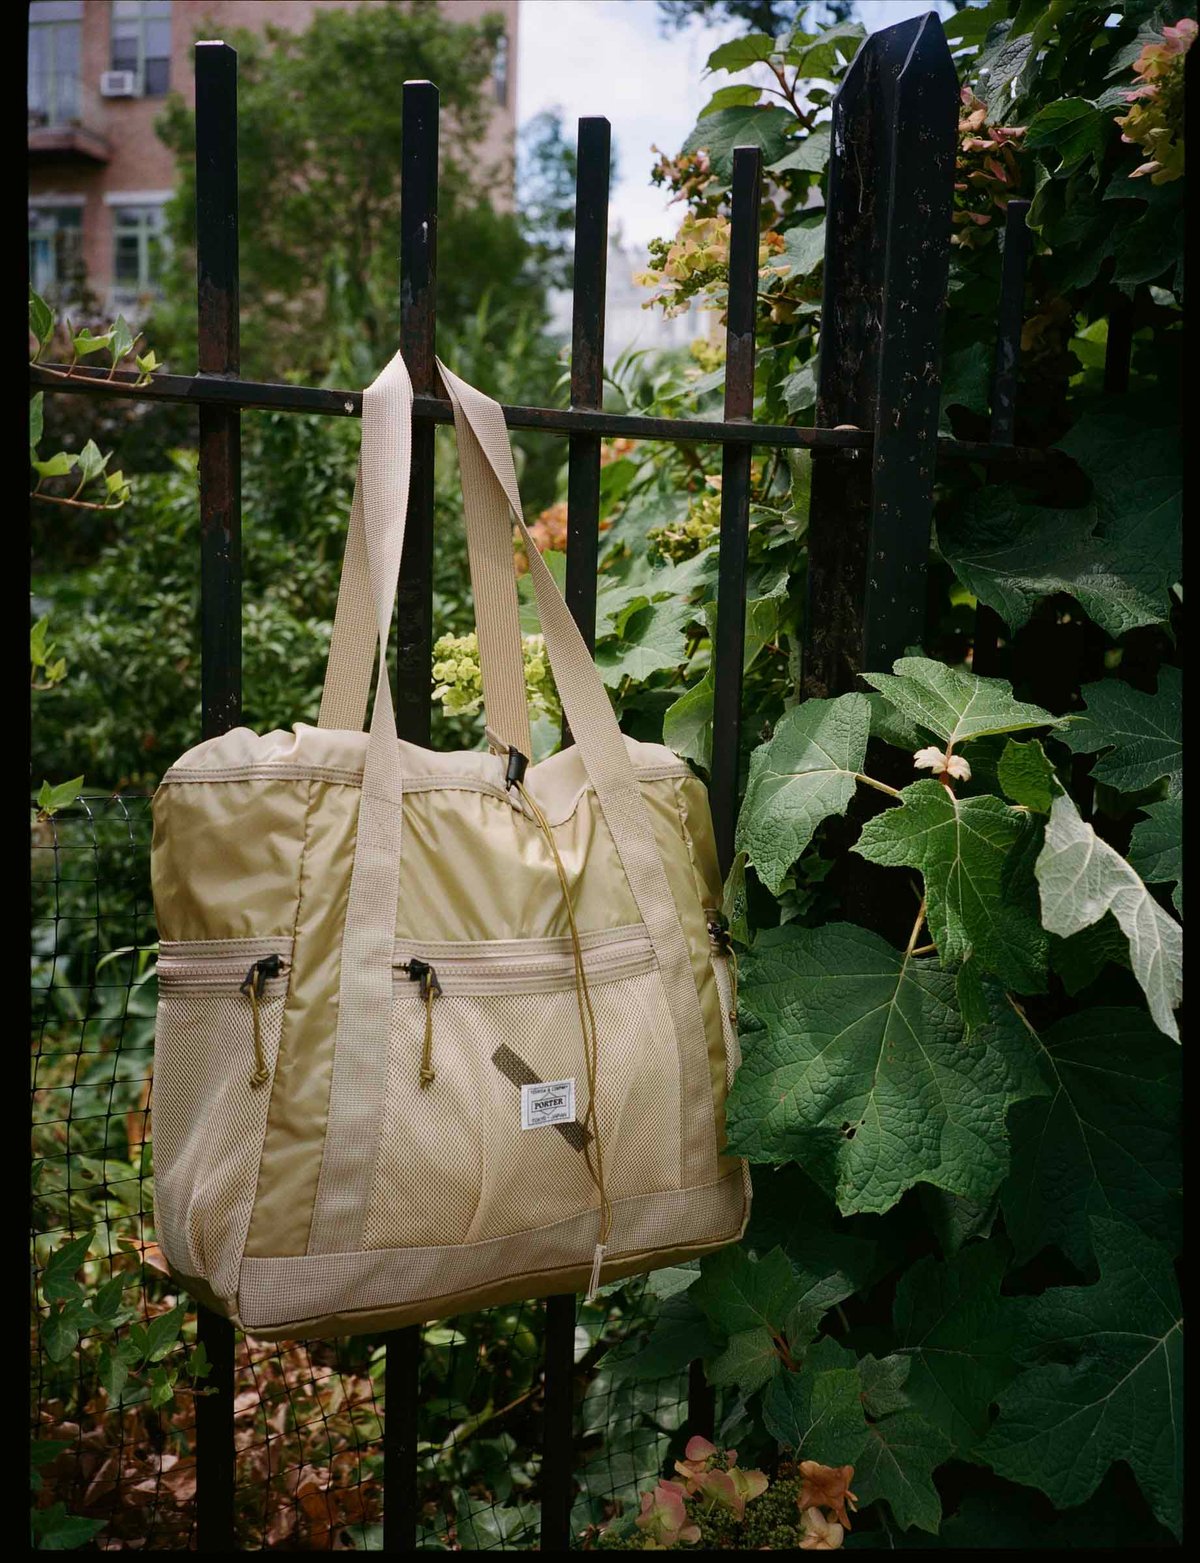 ポーター×サタデーズ ニューヨークシティ、メッシュ素材のバッグ2型発売